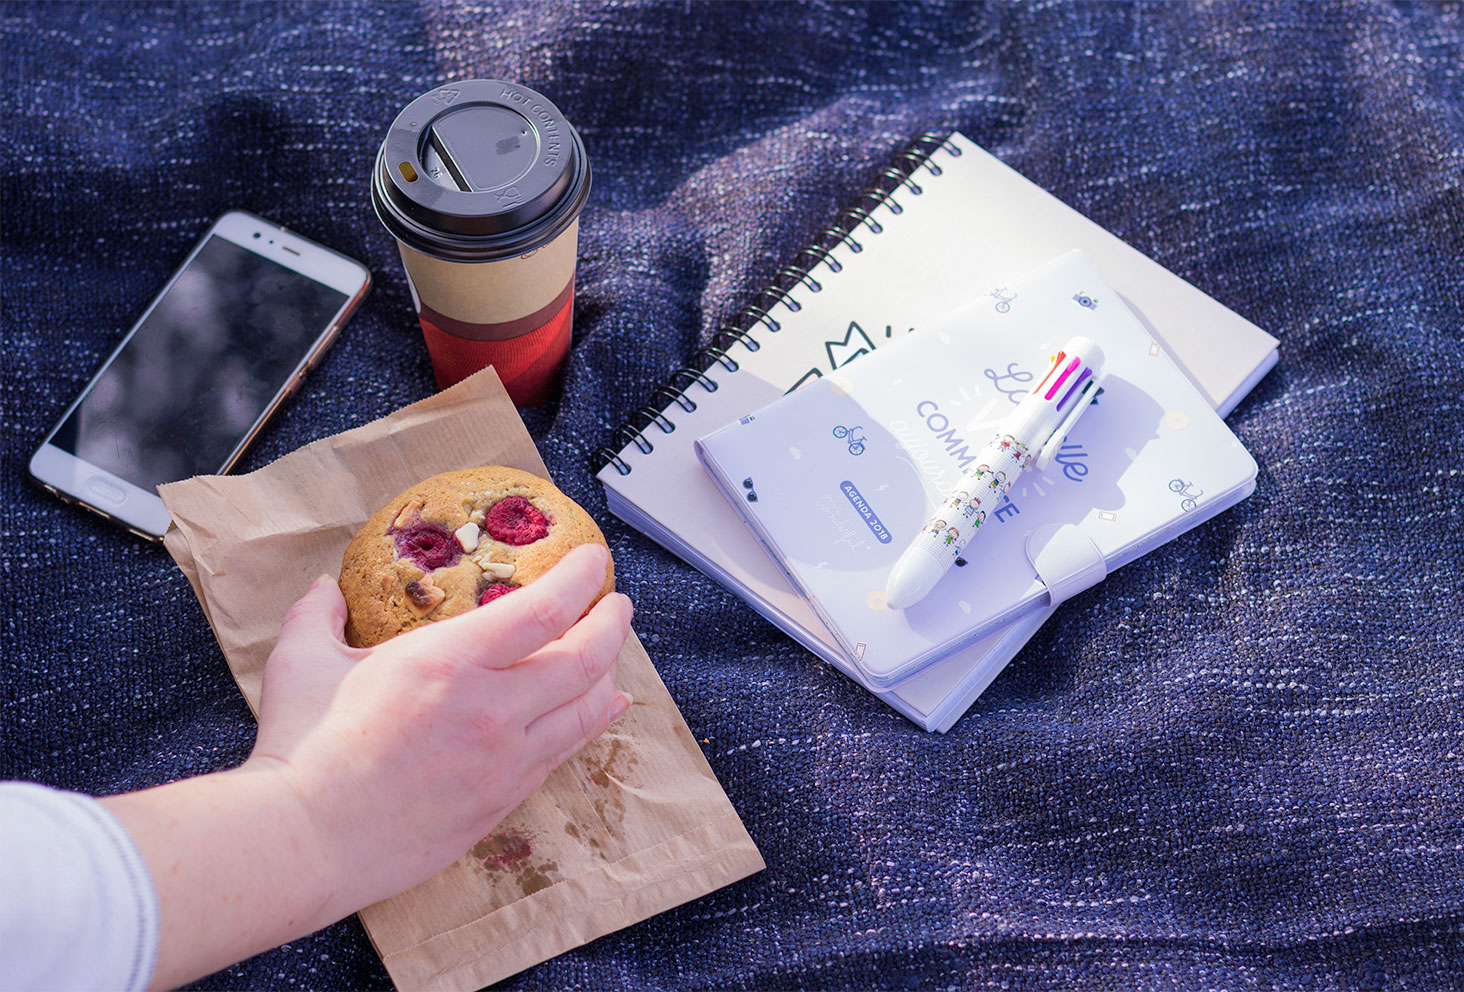 La panoplie nécessaire au premier bilan de formation : l'agenda, le carnet, le crayon, le téléphone, le cookie et le café, sur un plaid gris chiné